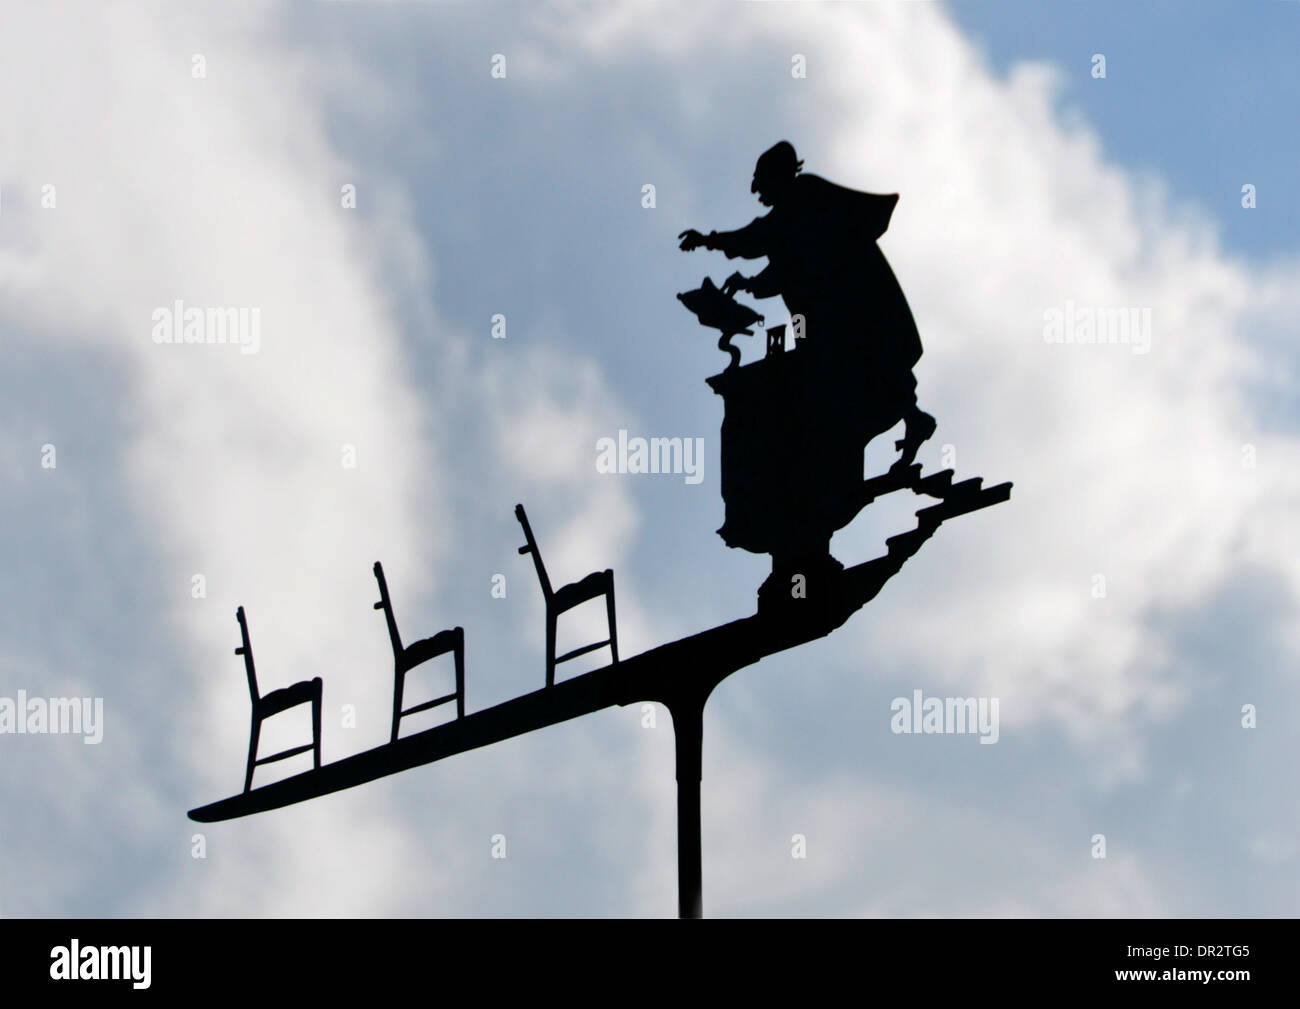 Ungewöhnliche Wetterfahne - Prediger im Gespräch mit leeren Kirchenbänken - Silhouette gegen den Himmel - weiße Wolken und blauer Himmel - Sonnenlicht Stockfoto